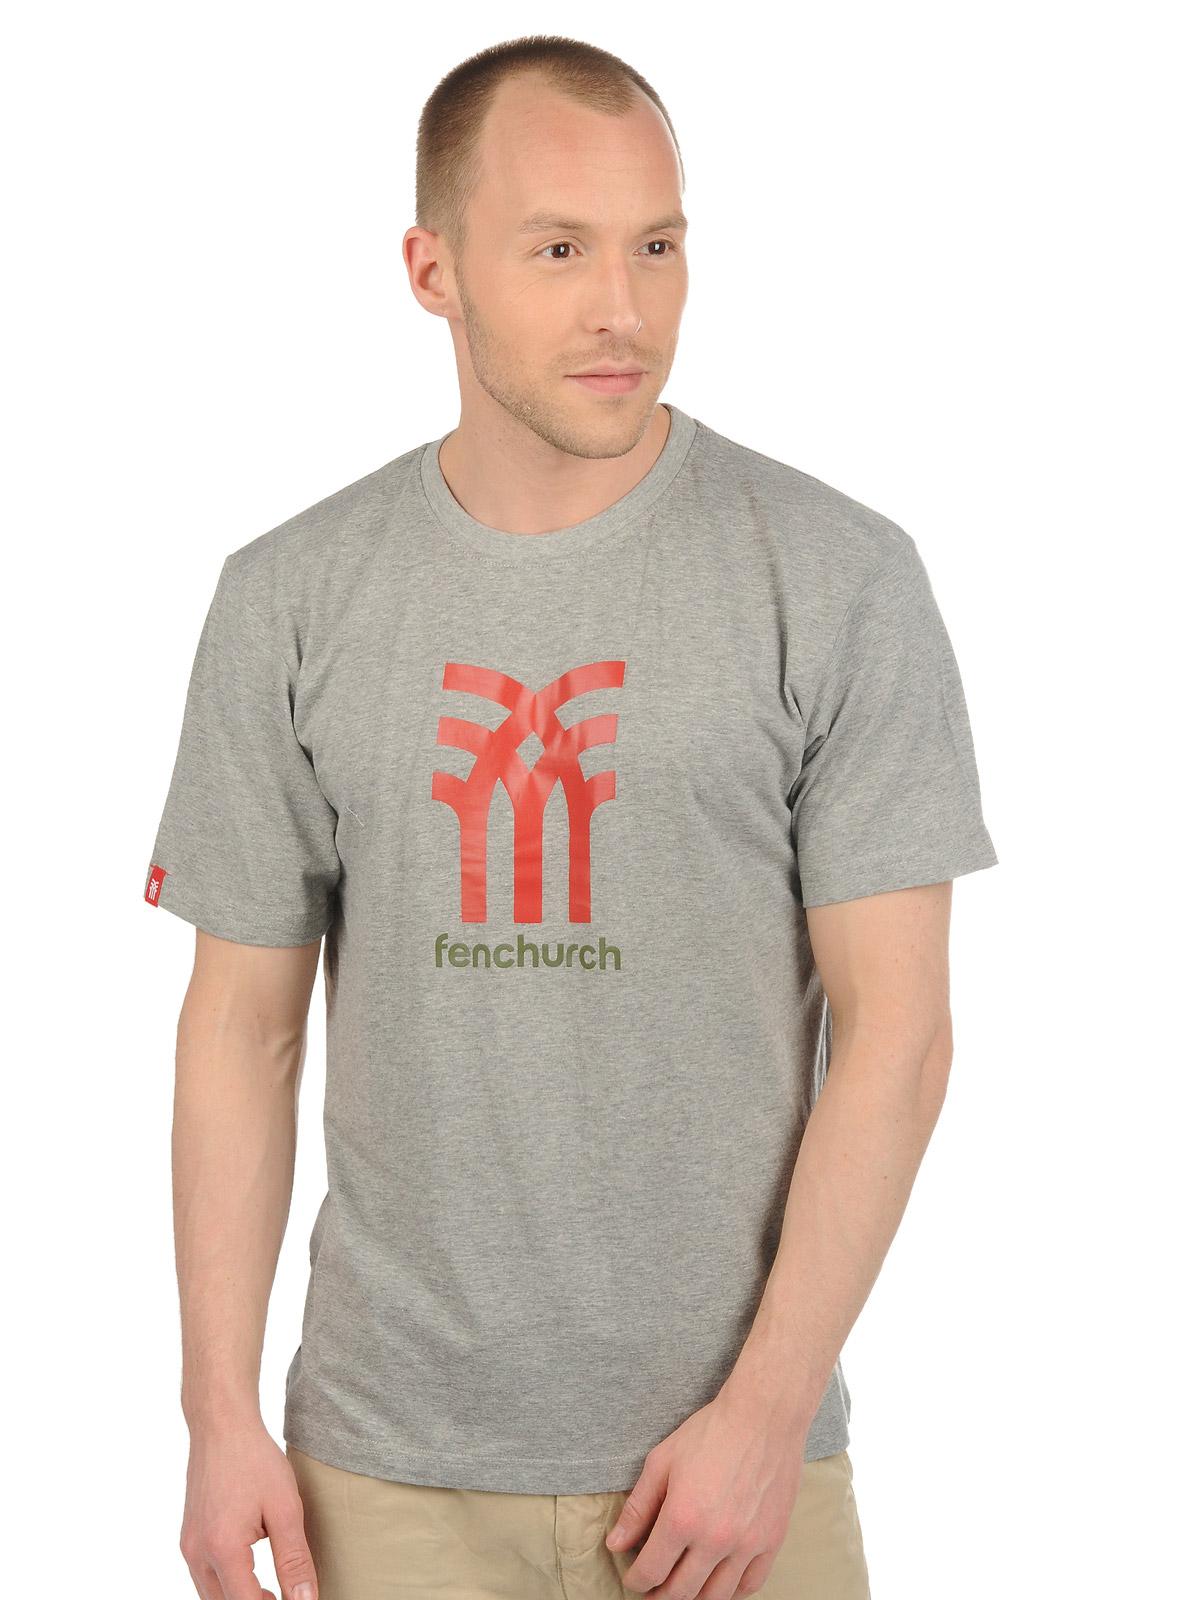 Foto Fenchurch Camiseta gris L